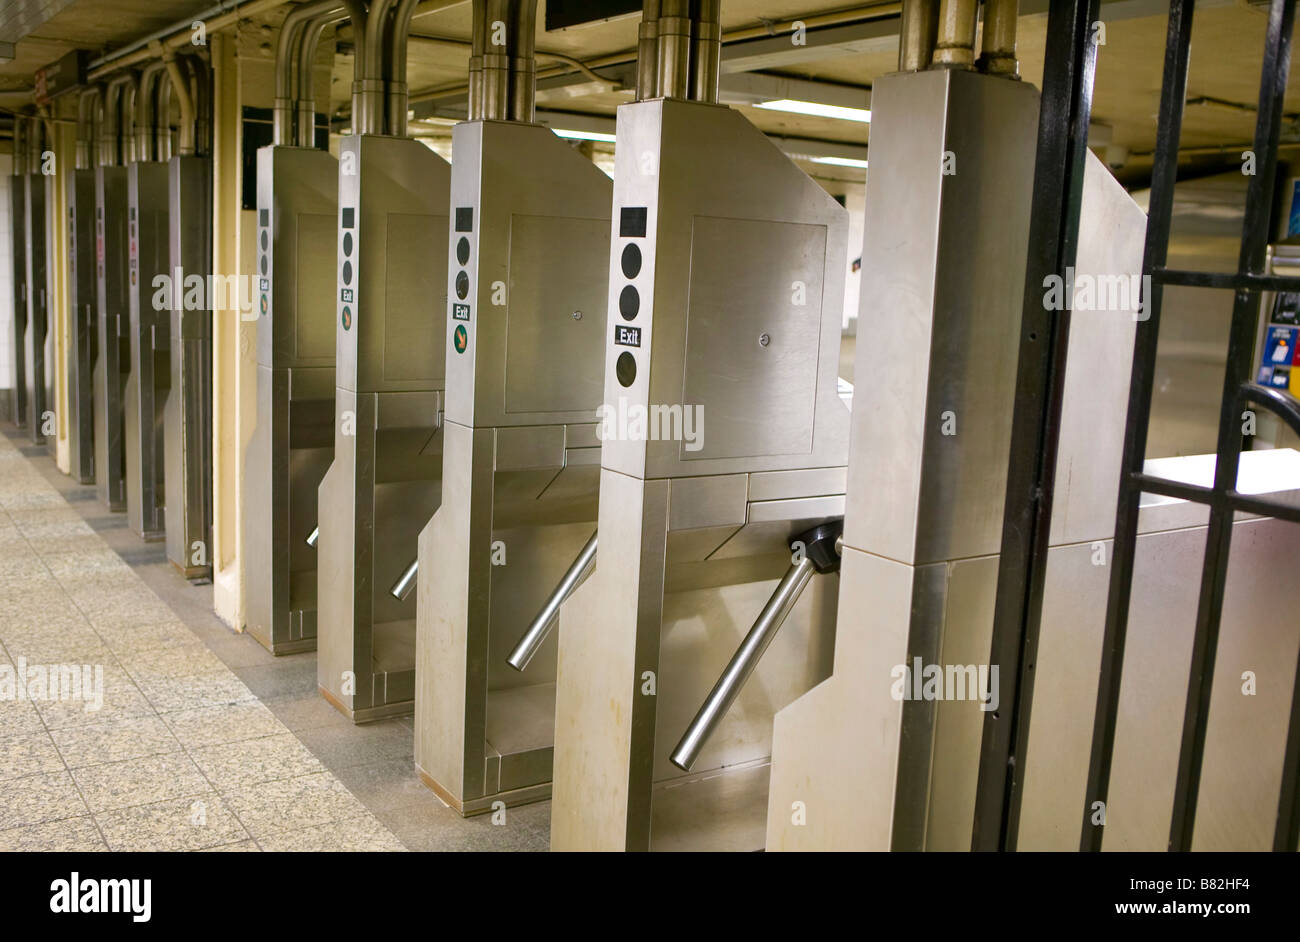 Manhattan, New York; Row of subway turnstiles Stock Photo